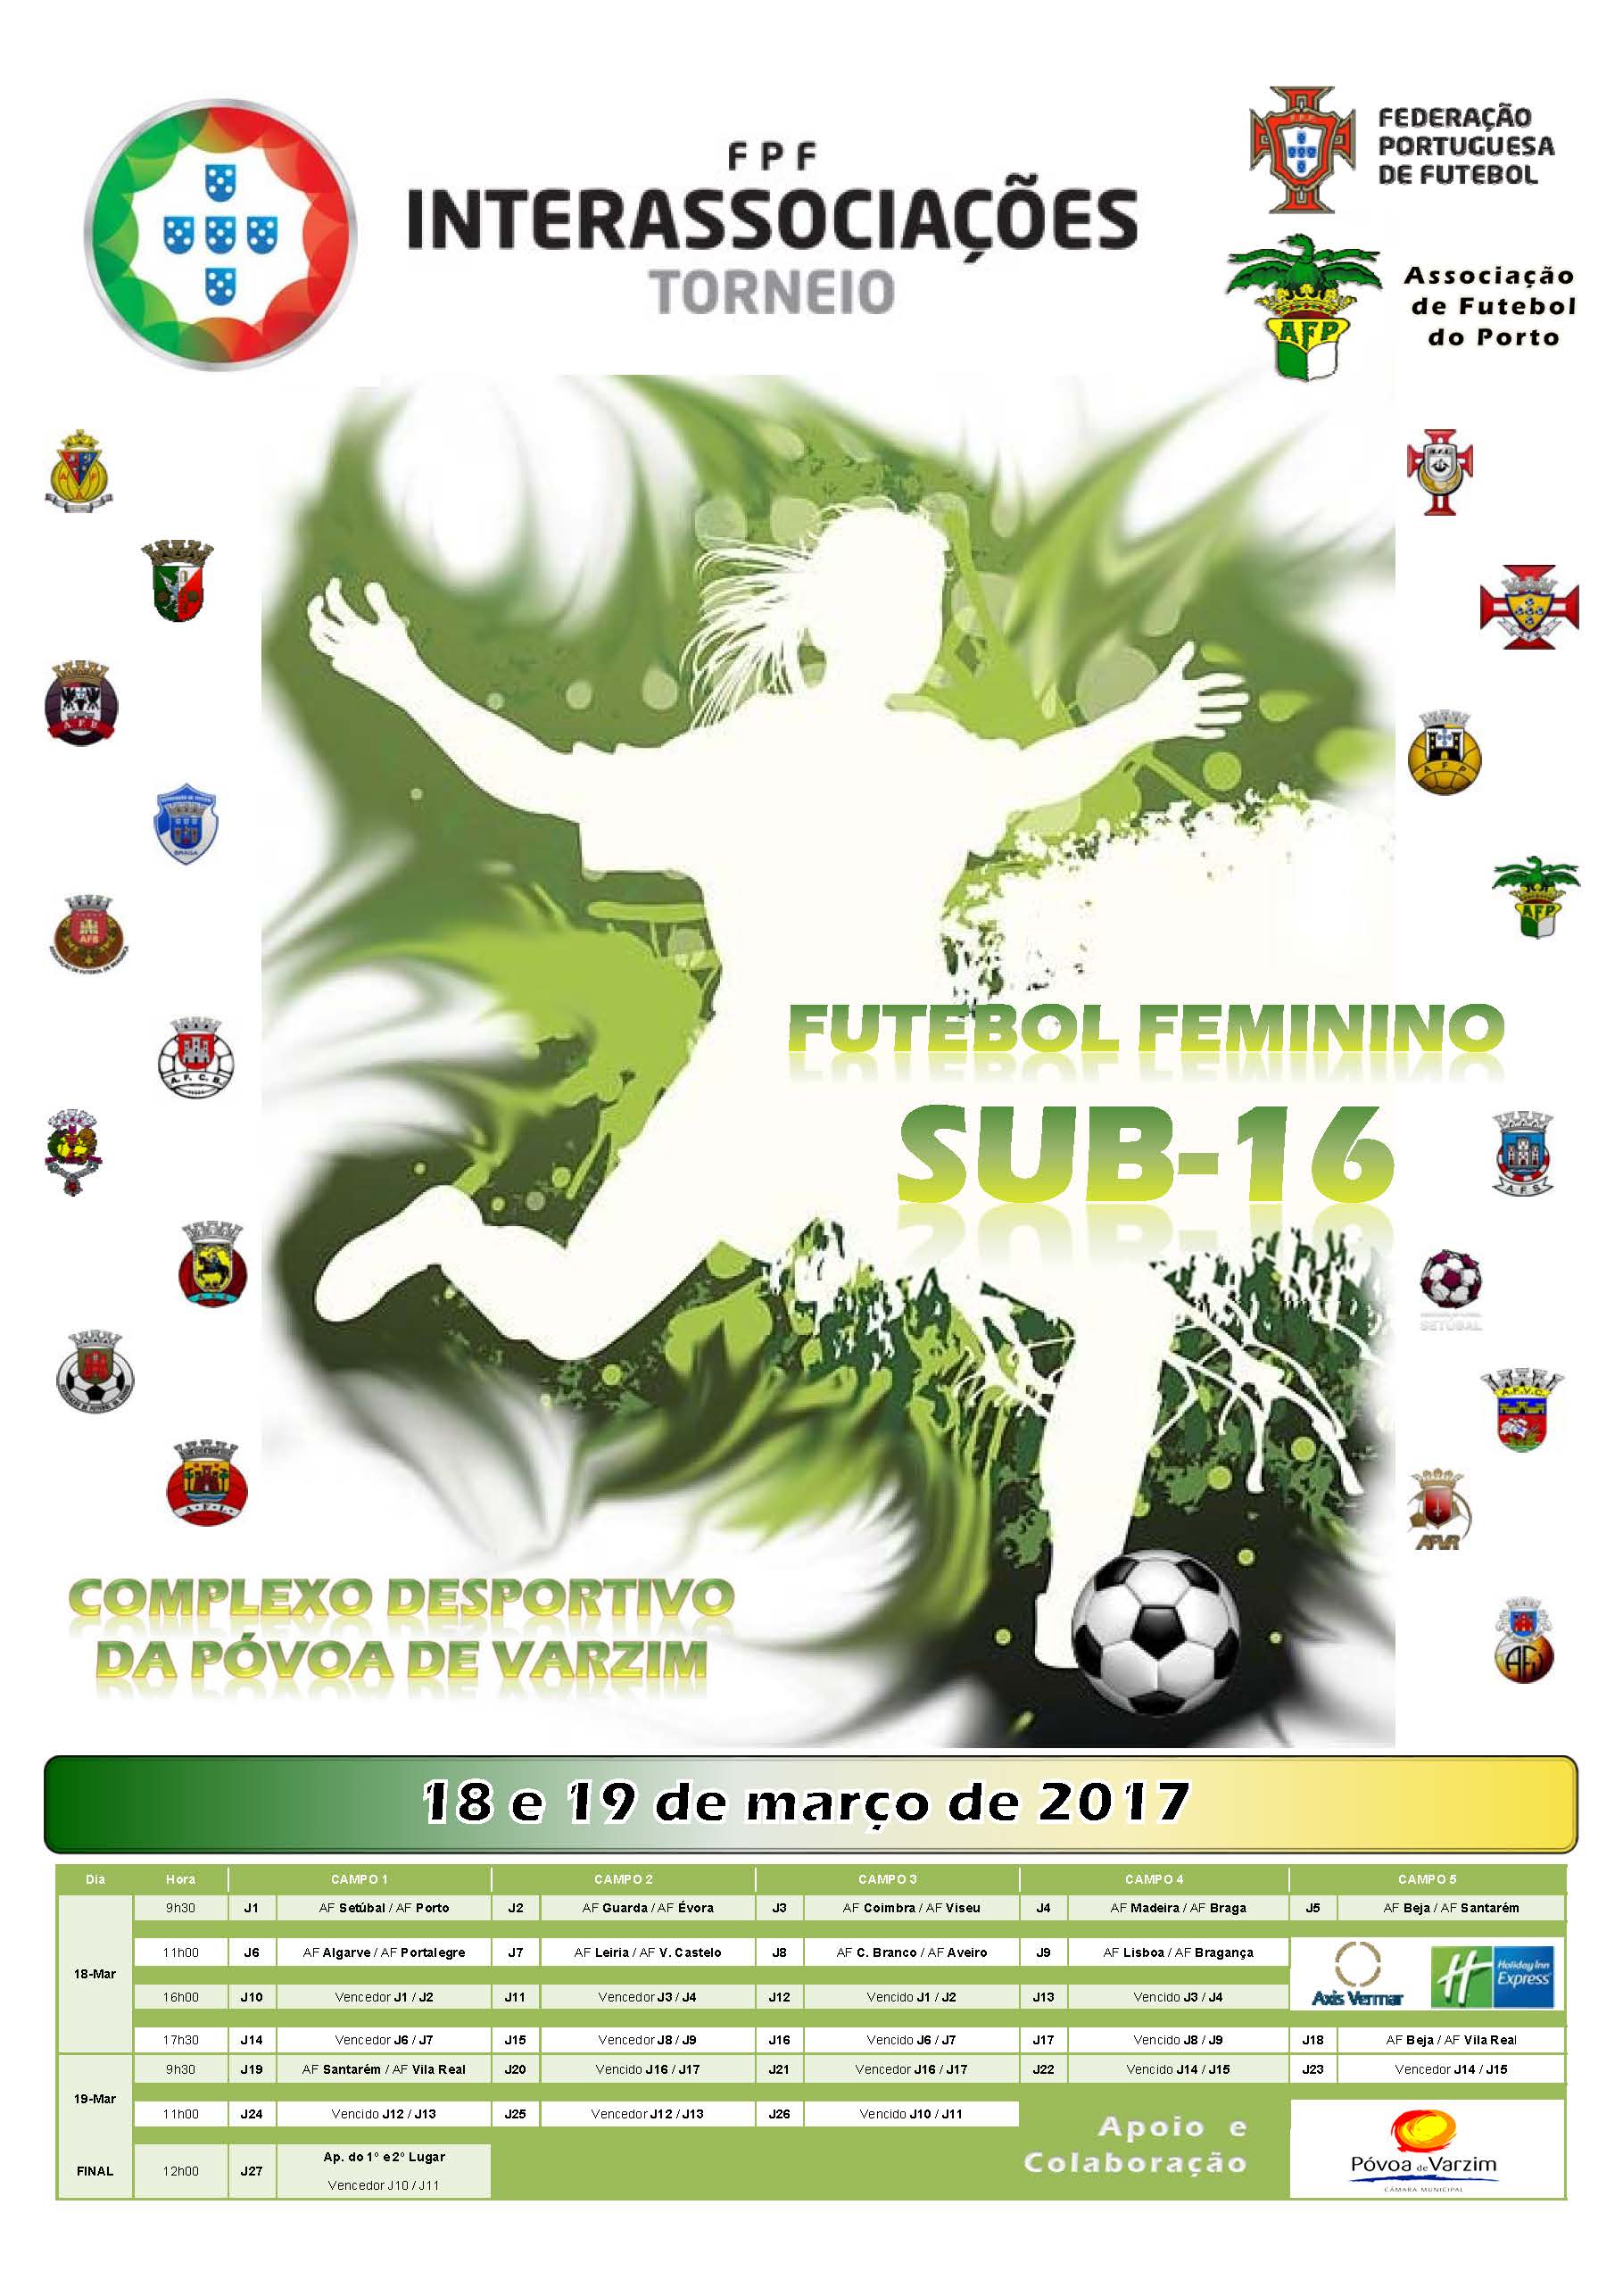 Sub16 Femininos de Futebol participam no Torneio Interassociações de 17 a 19 de março de 2017.